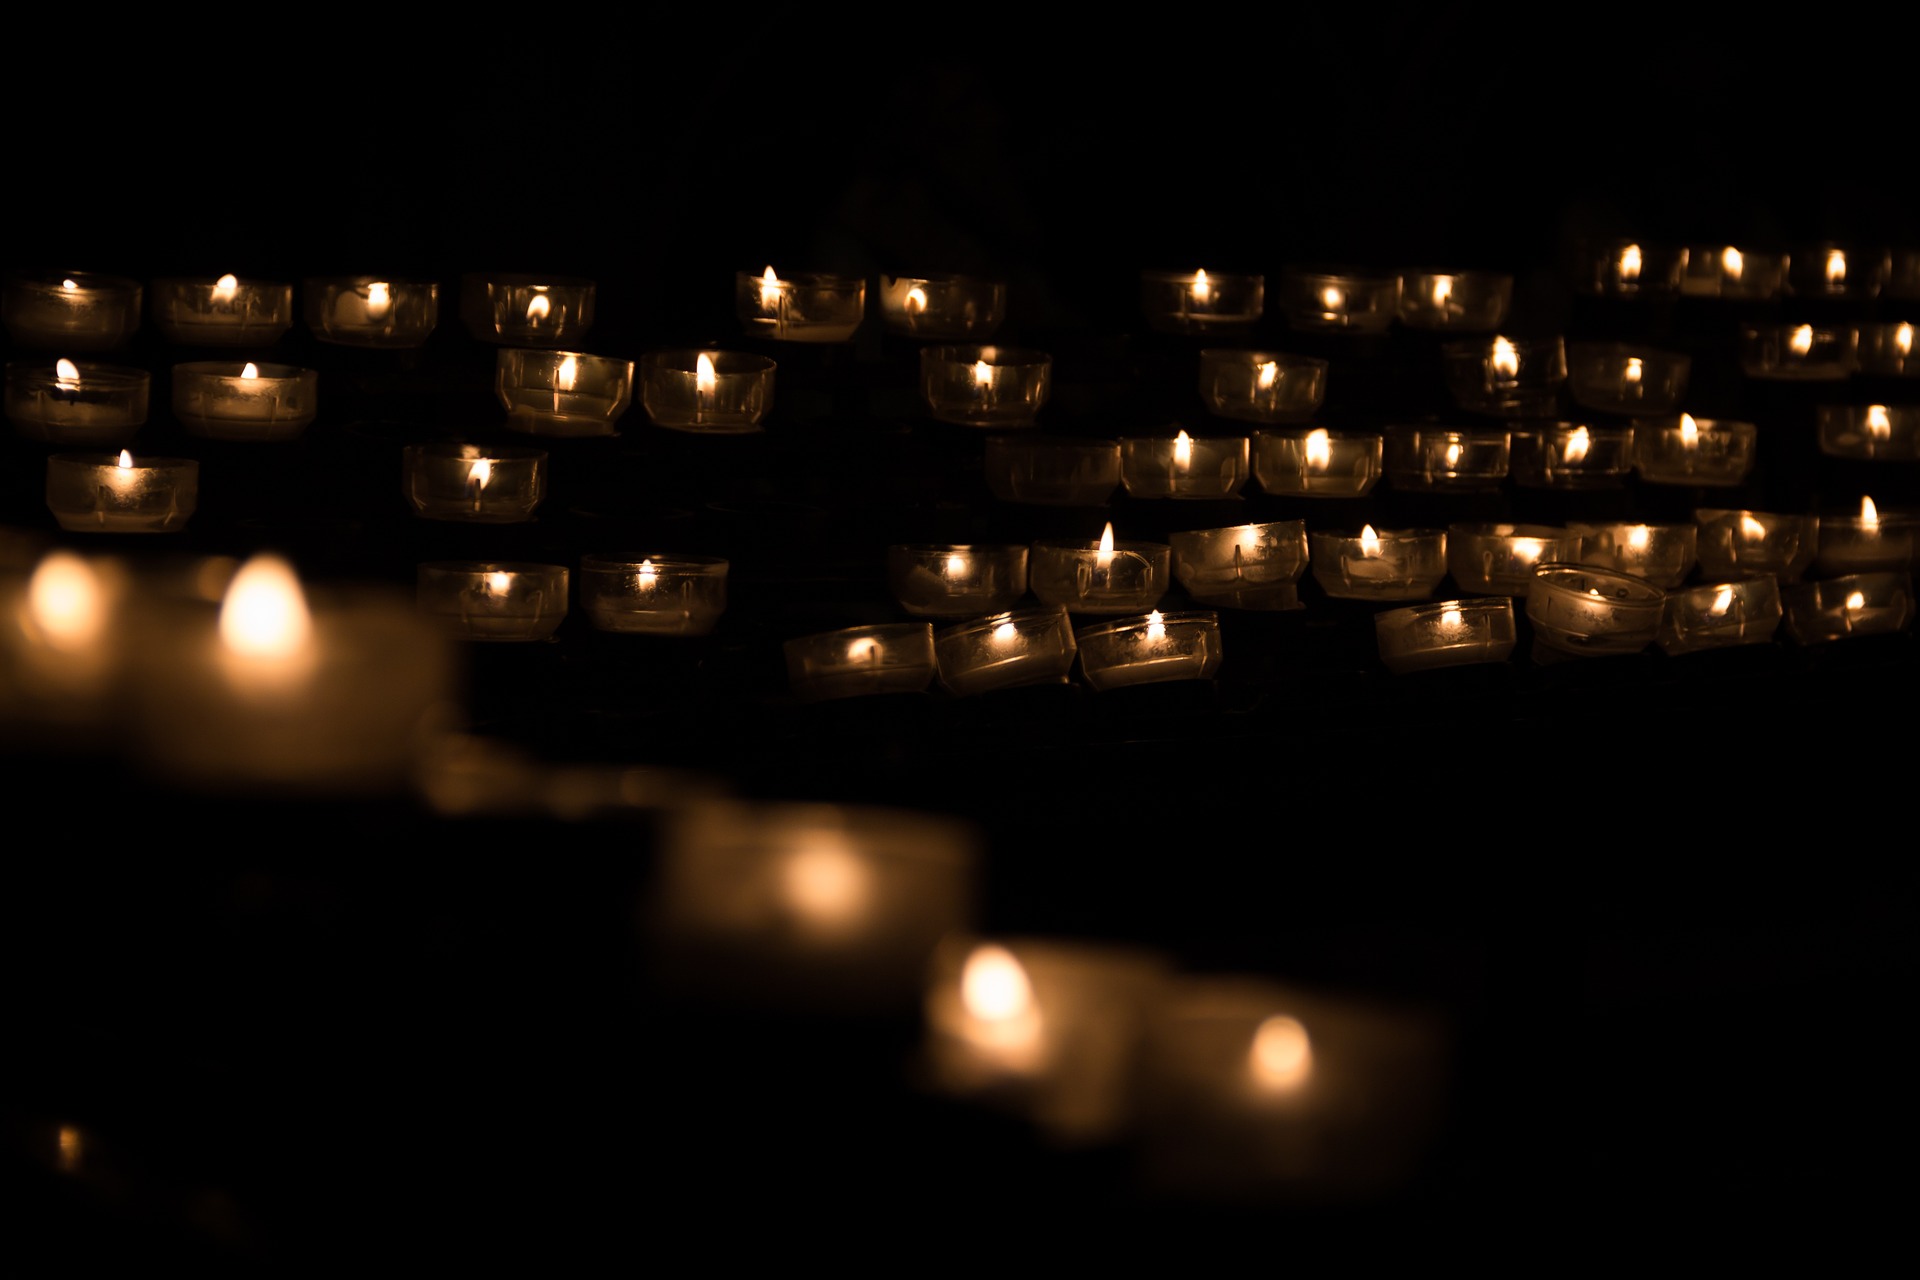 Beerdigung Kerzen Trauersprüche